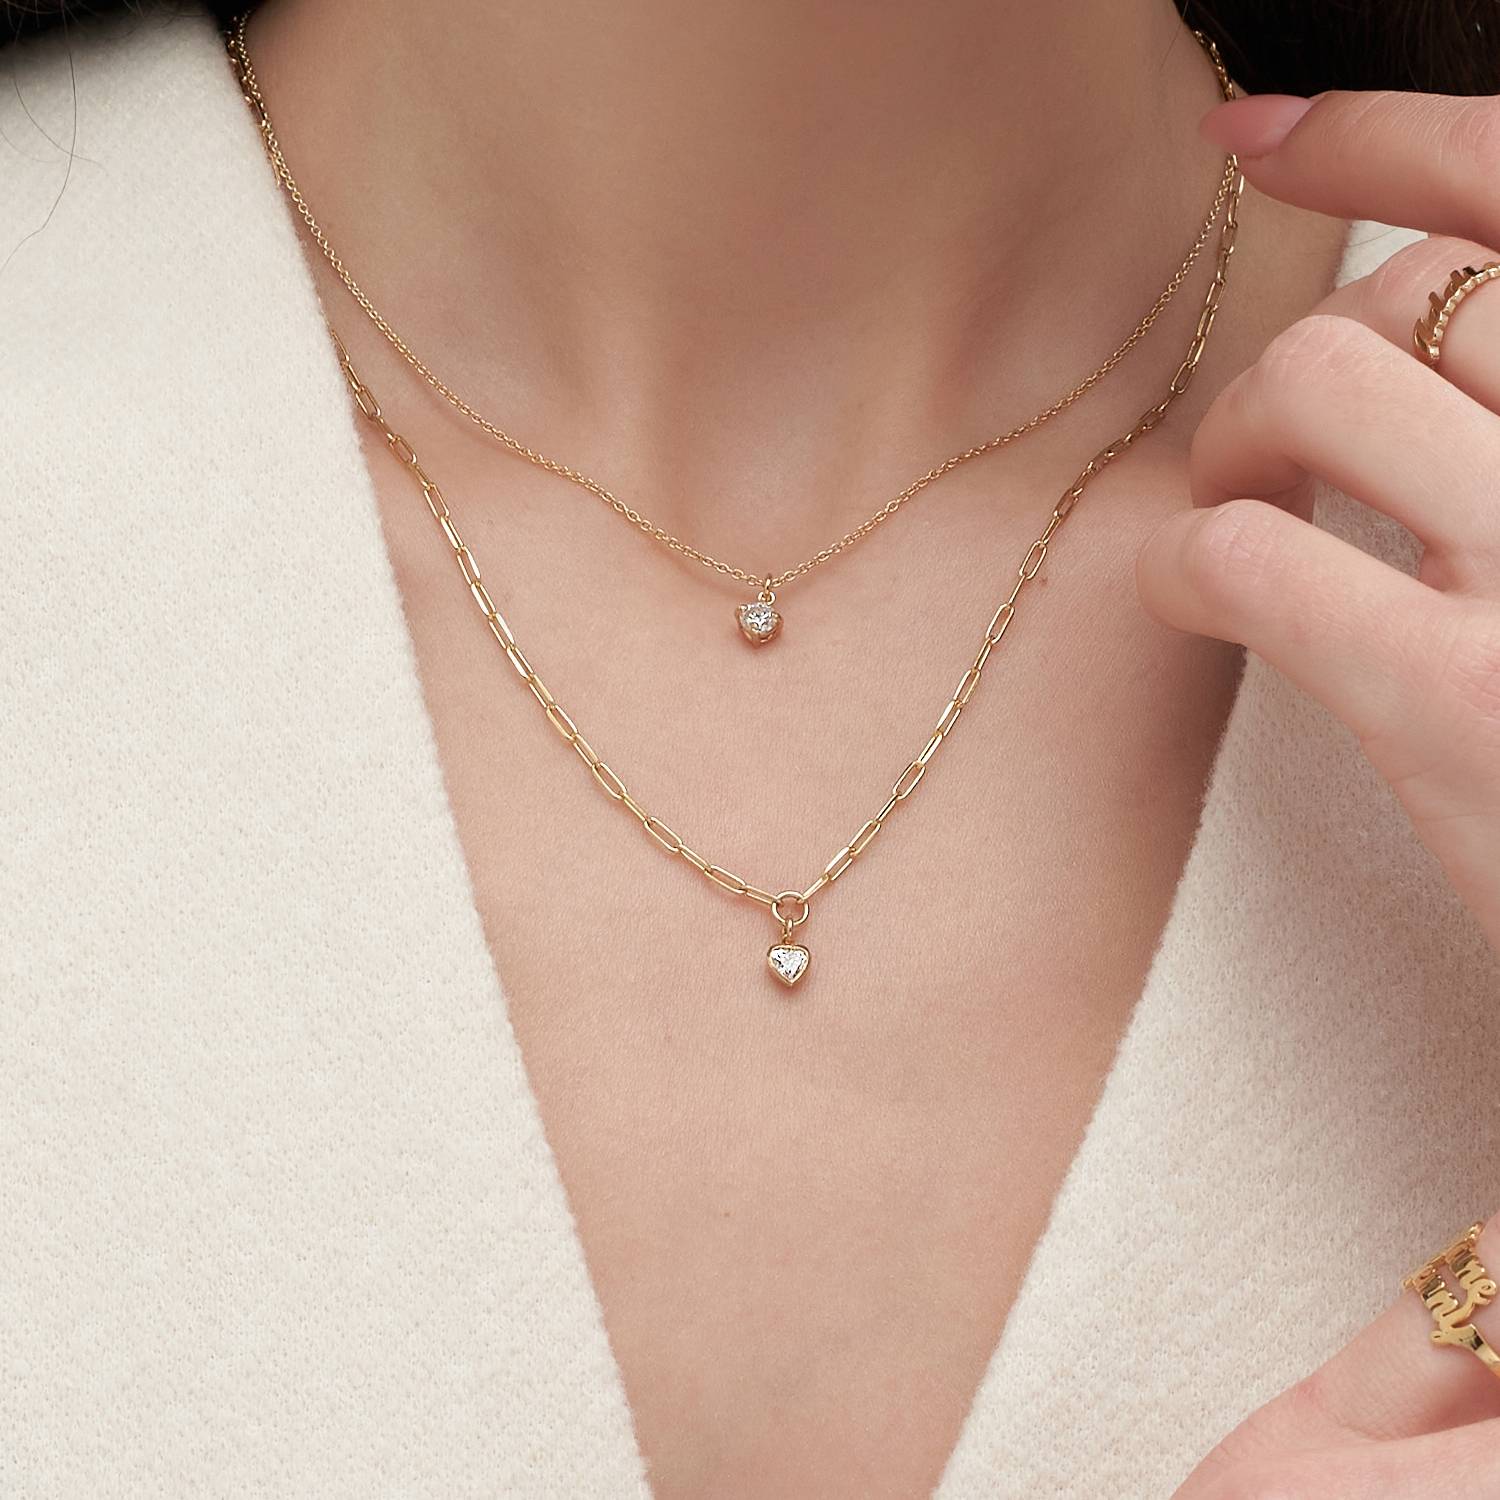 Te Amo 0.2 ct Heart Shape Diamond Necklace - Gold Vermeil-1 product photo